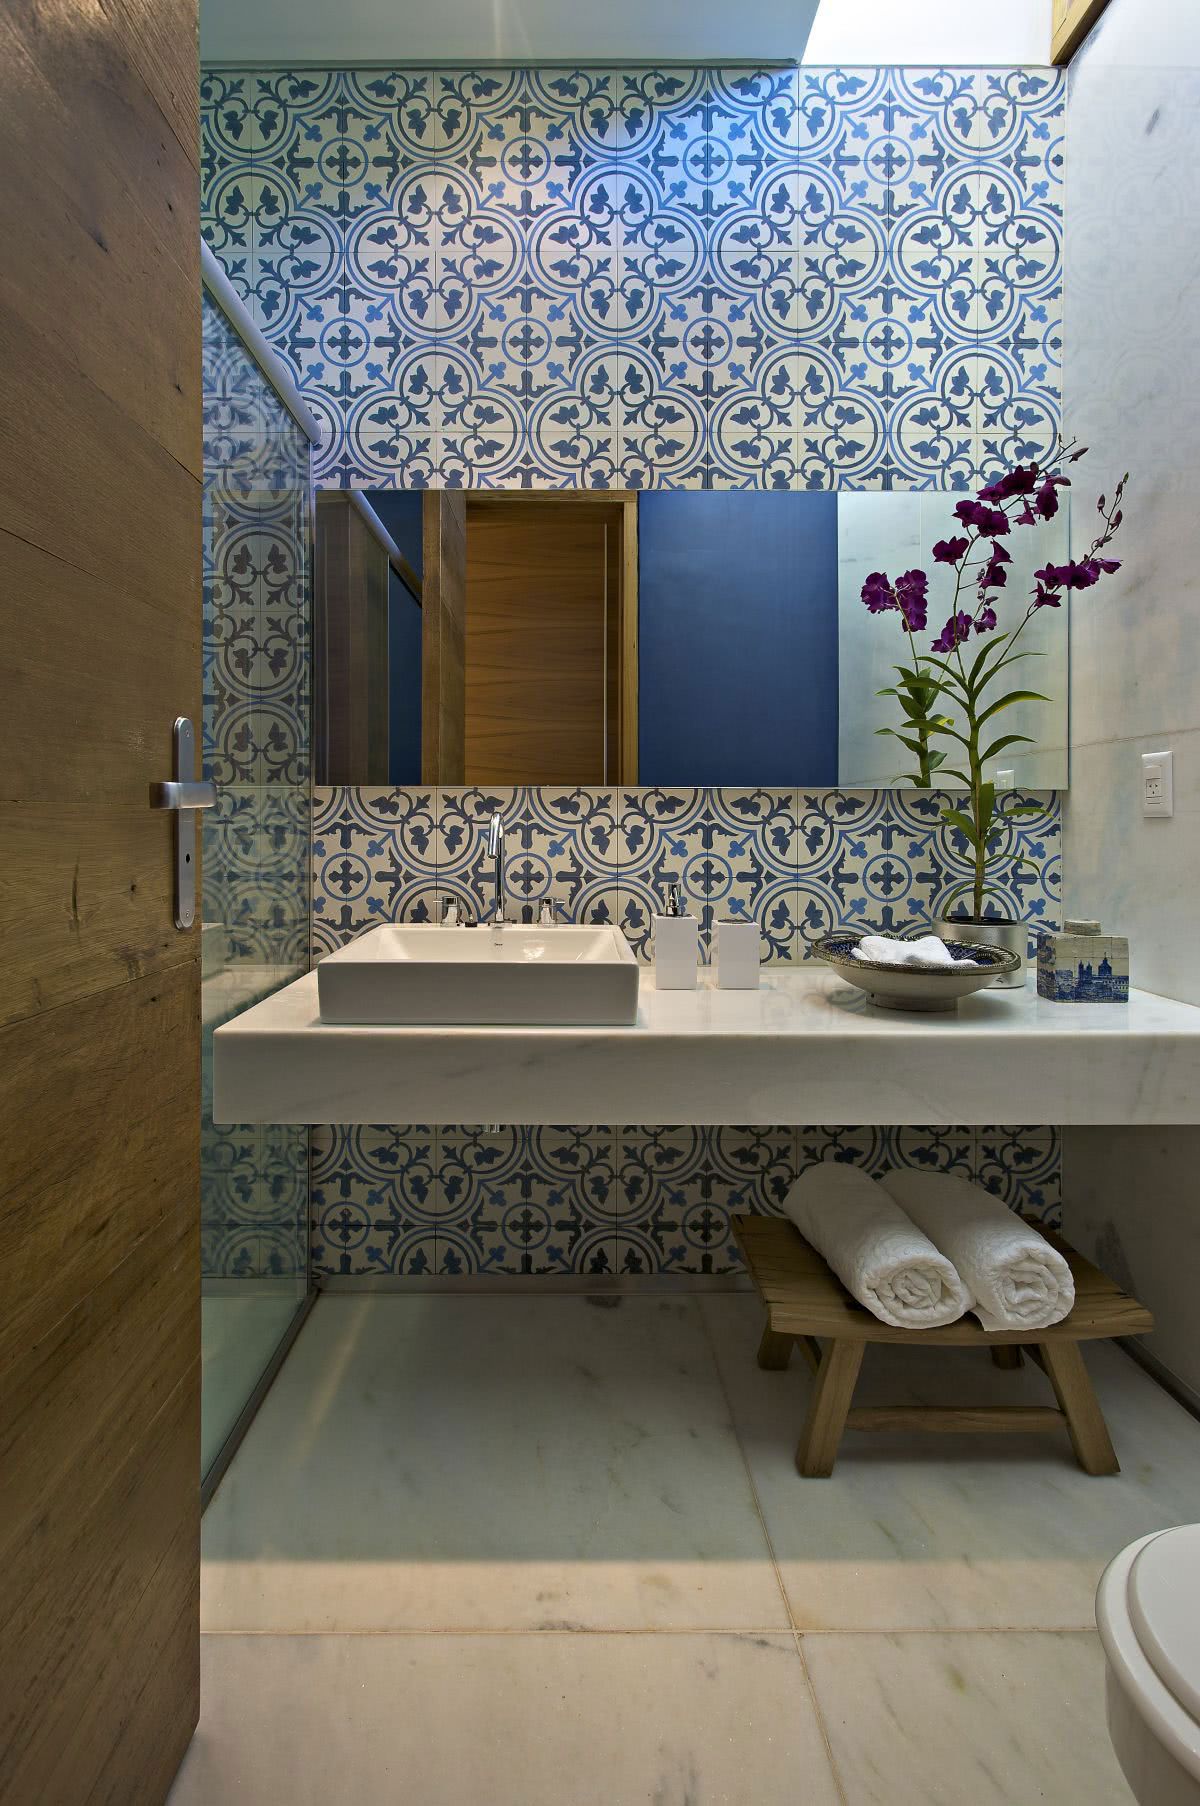 Veja como o azulejo pode mudar a cara da decoração do banheiro